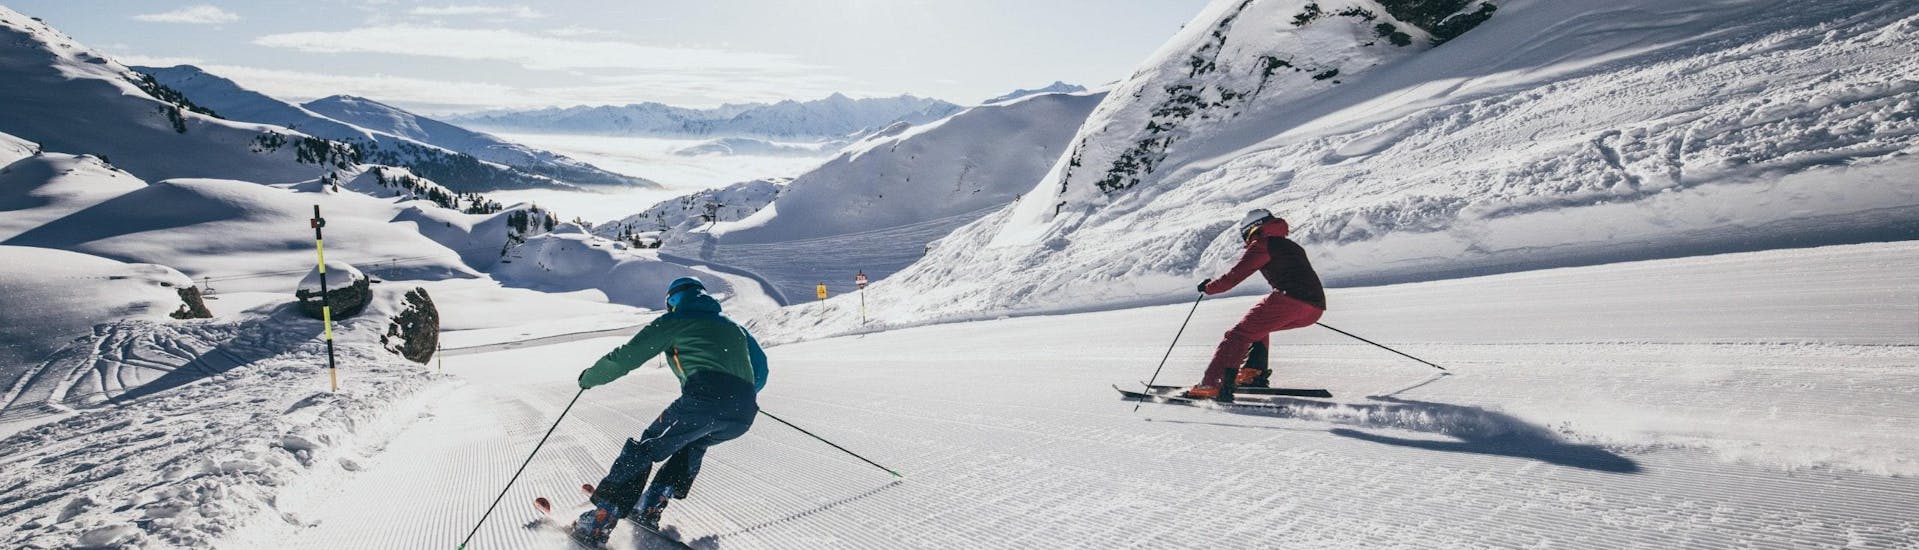 Ausblick auf die sonnige Berglandschaft beim Skifahren lernen mit den Skischulen in der Zillertal Arena.